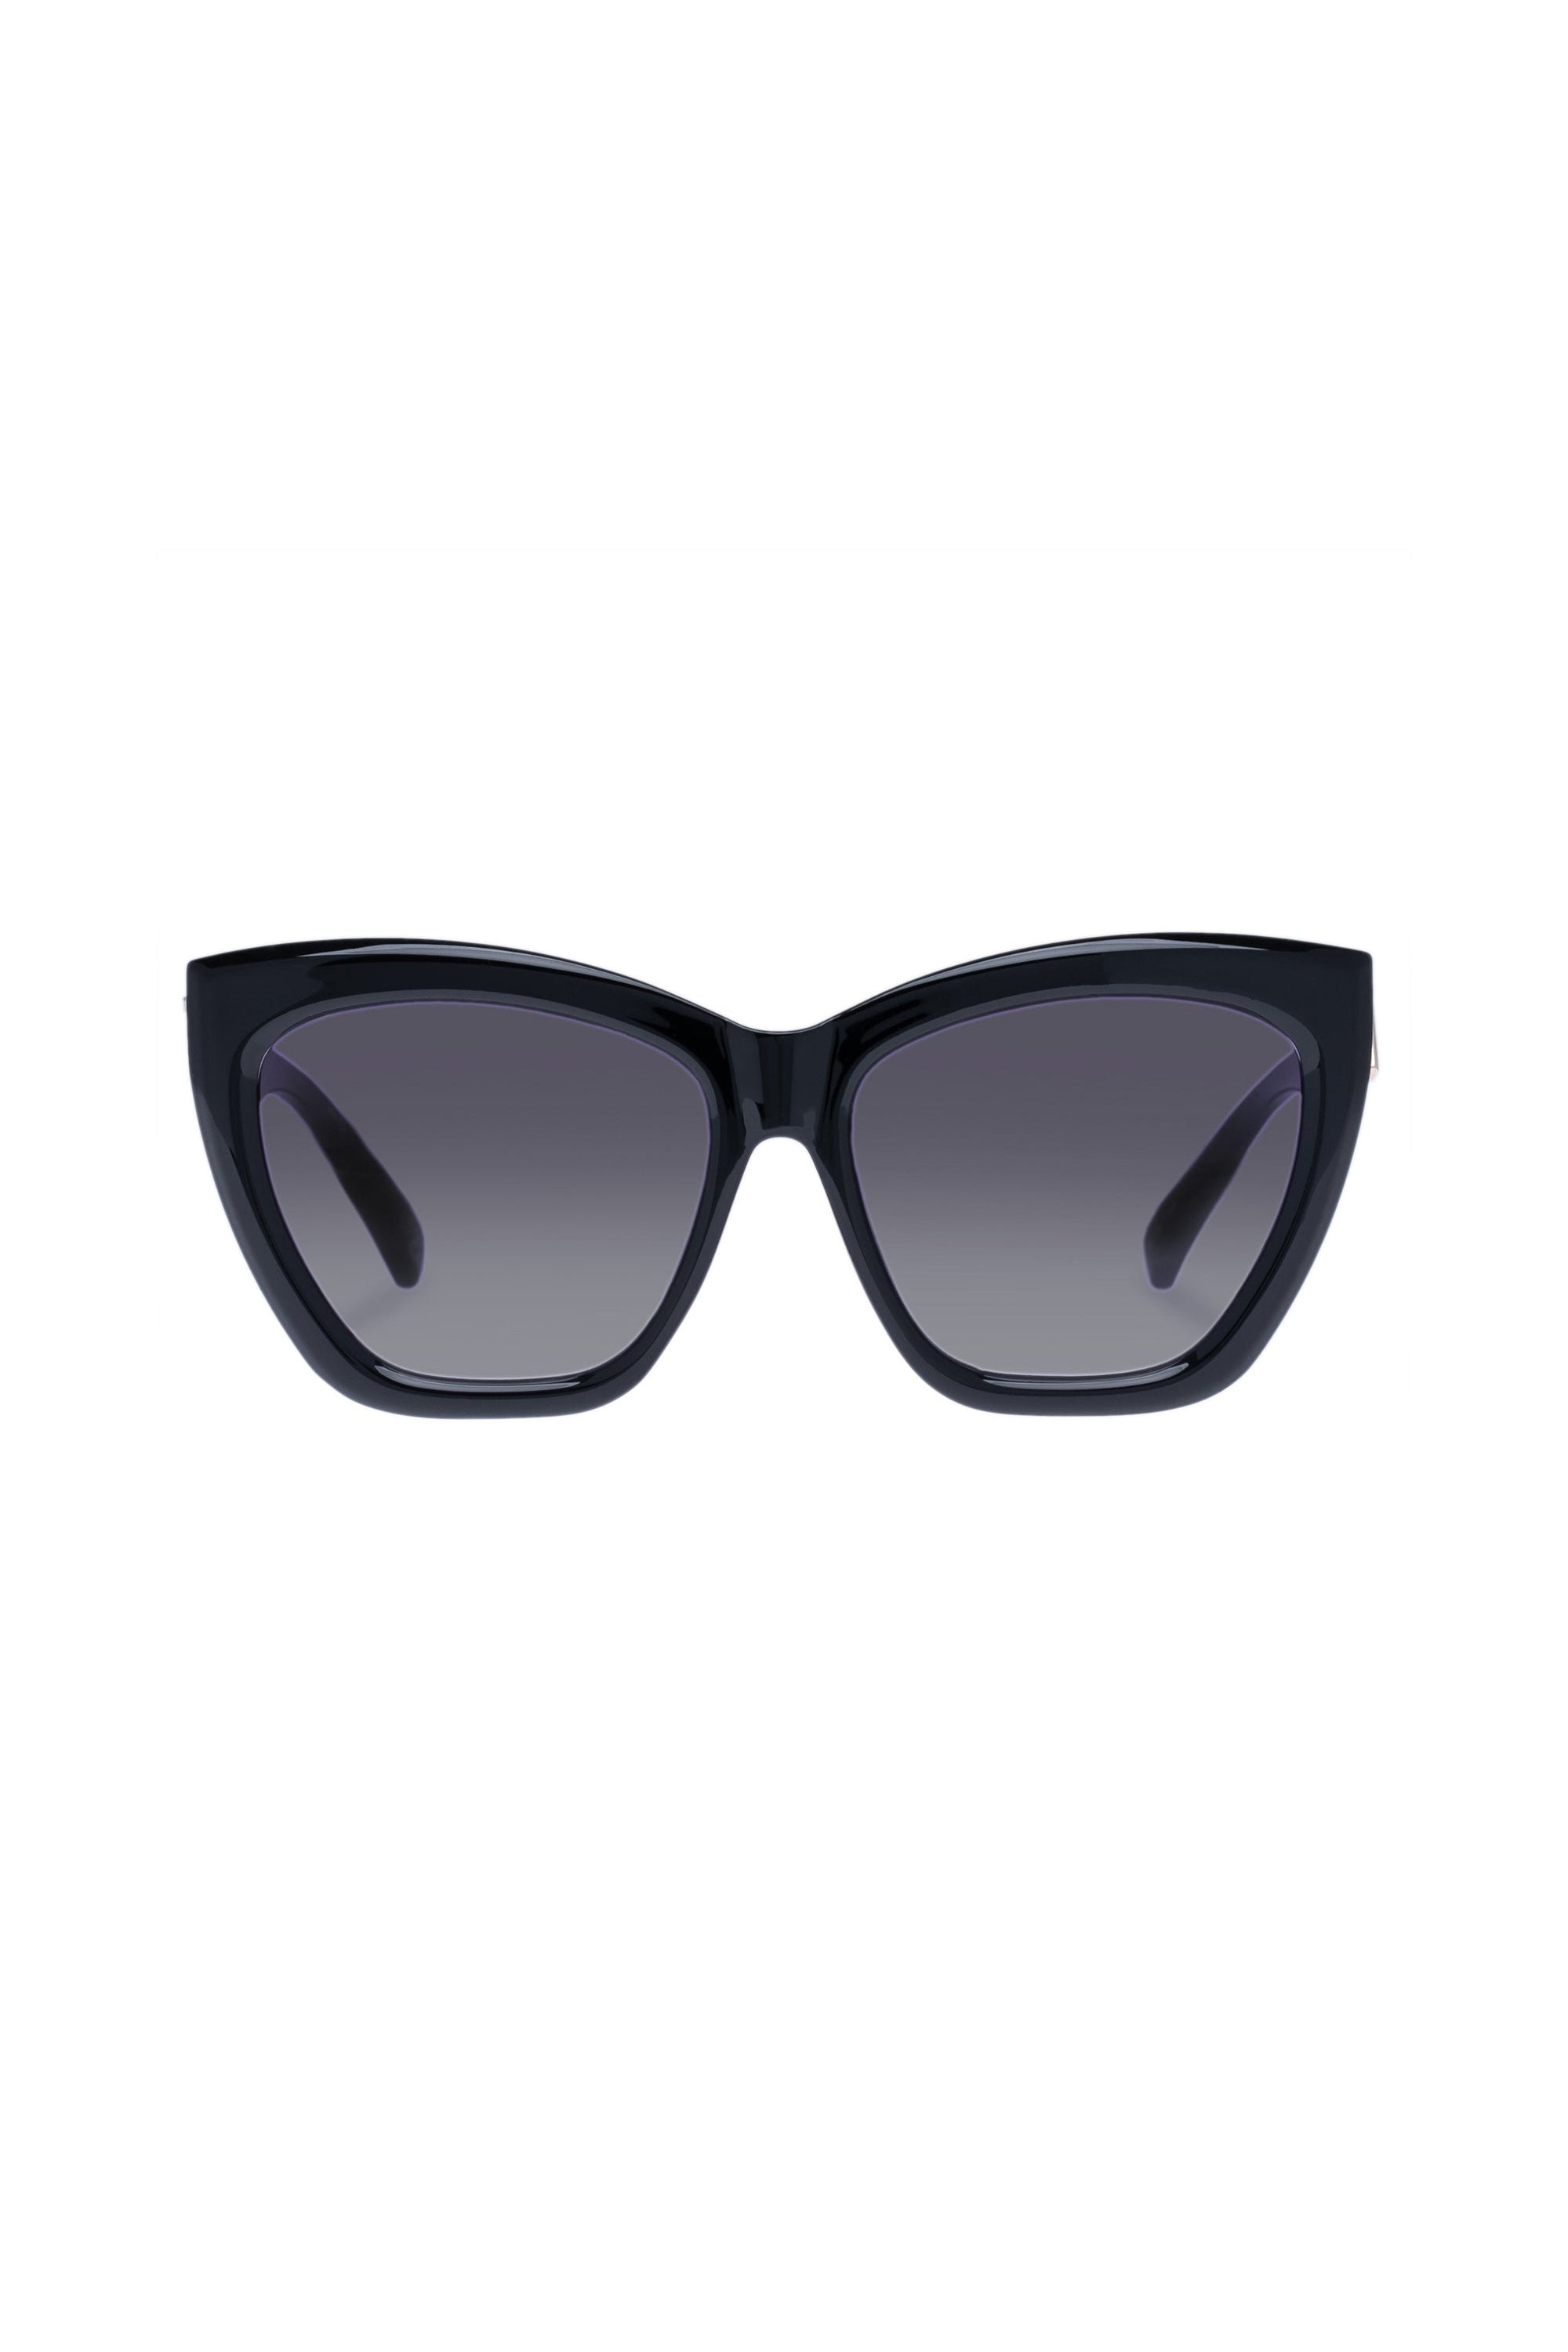 Le Specs Vamos Sunglasses - Black - RUM Amsterdam